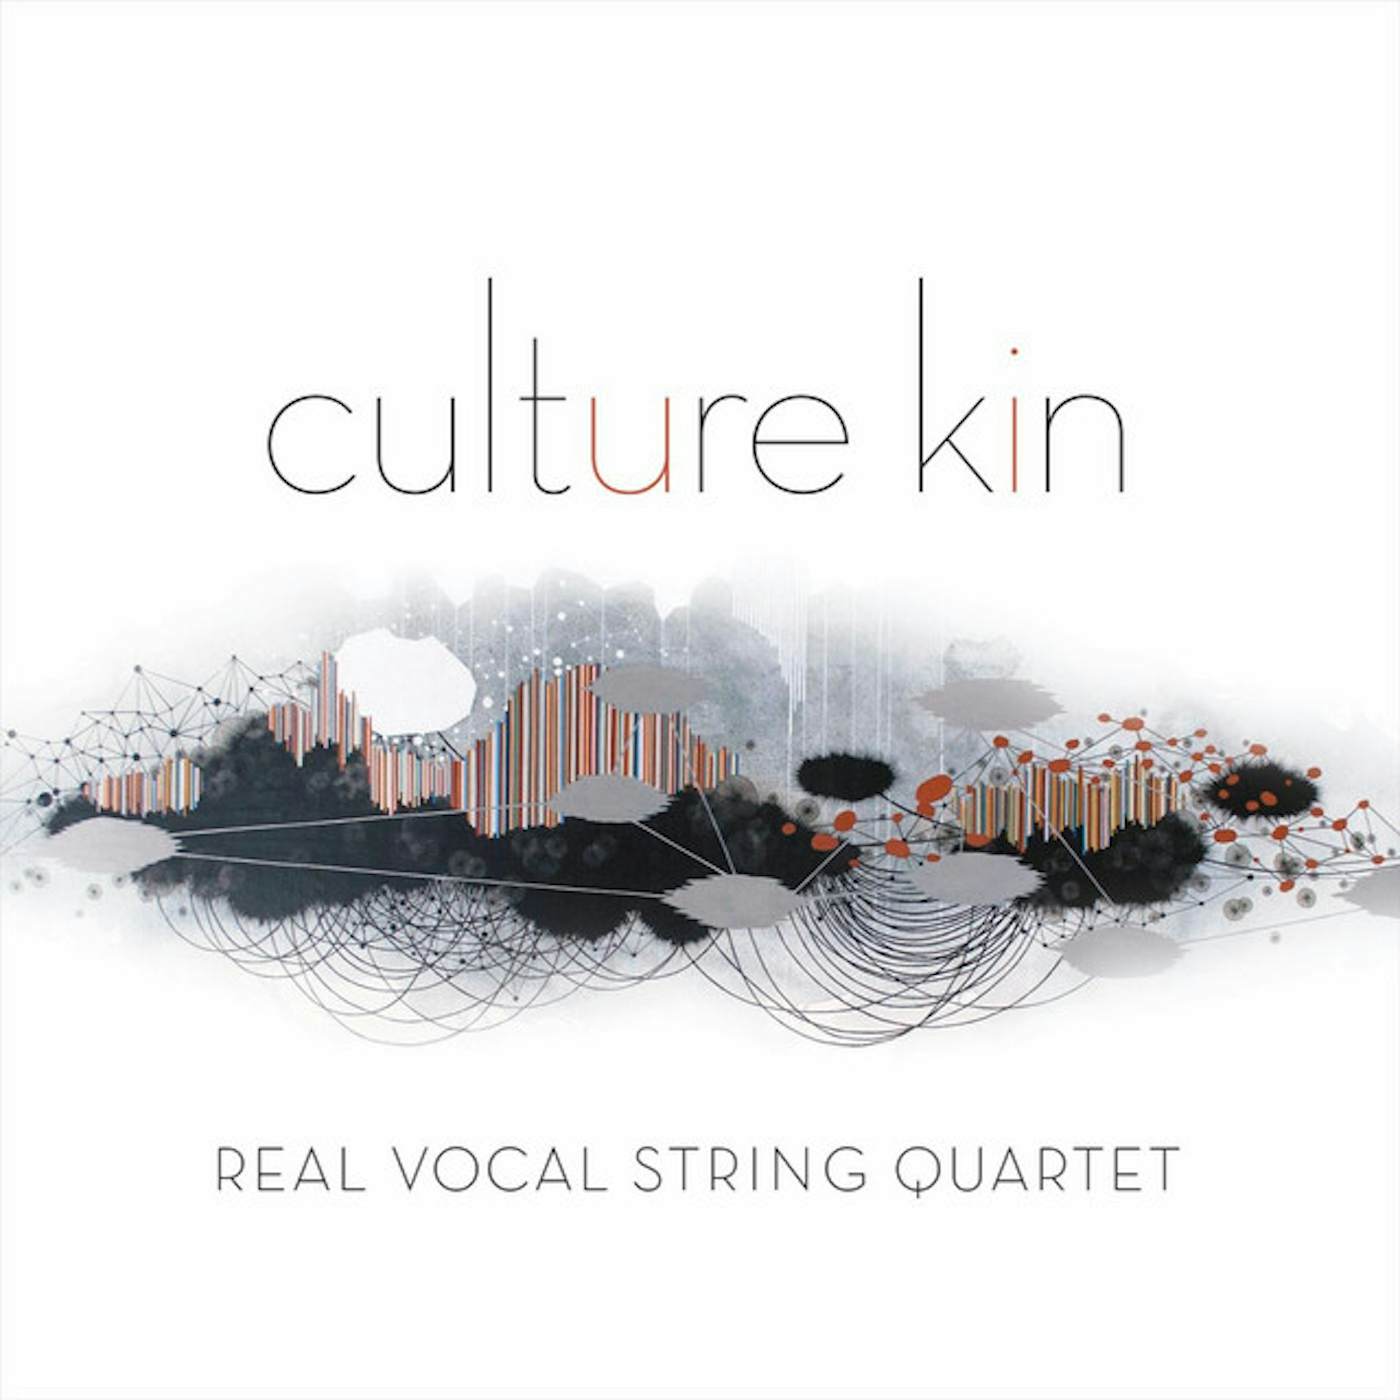 Real Vocal String Quartet CULTURE KIN CD